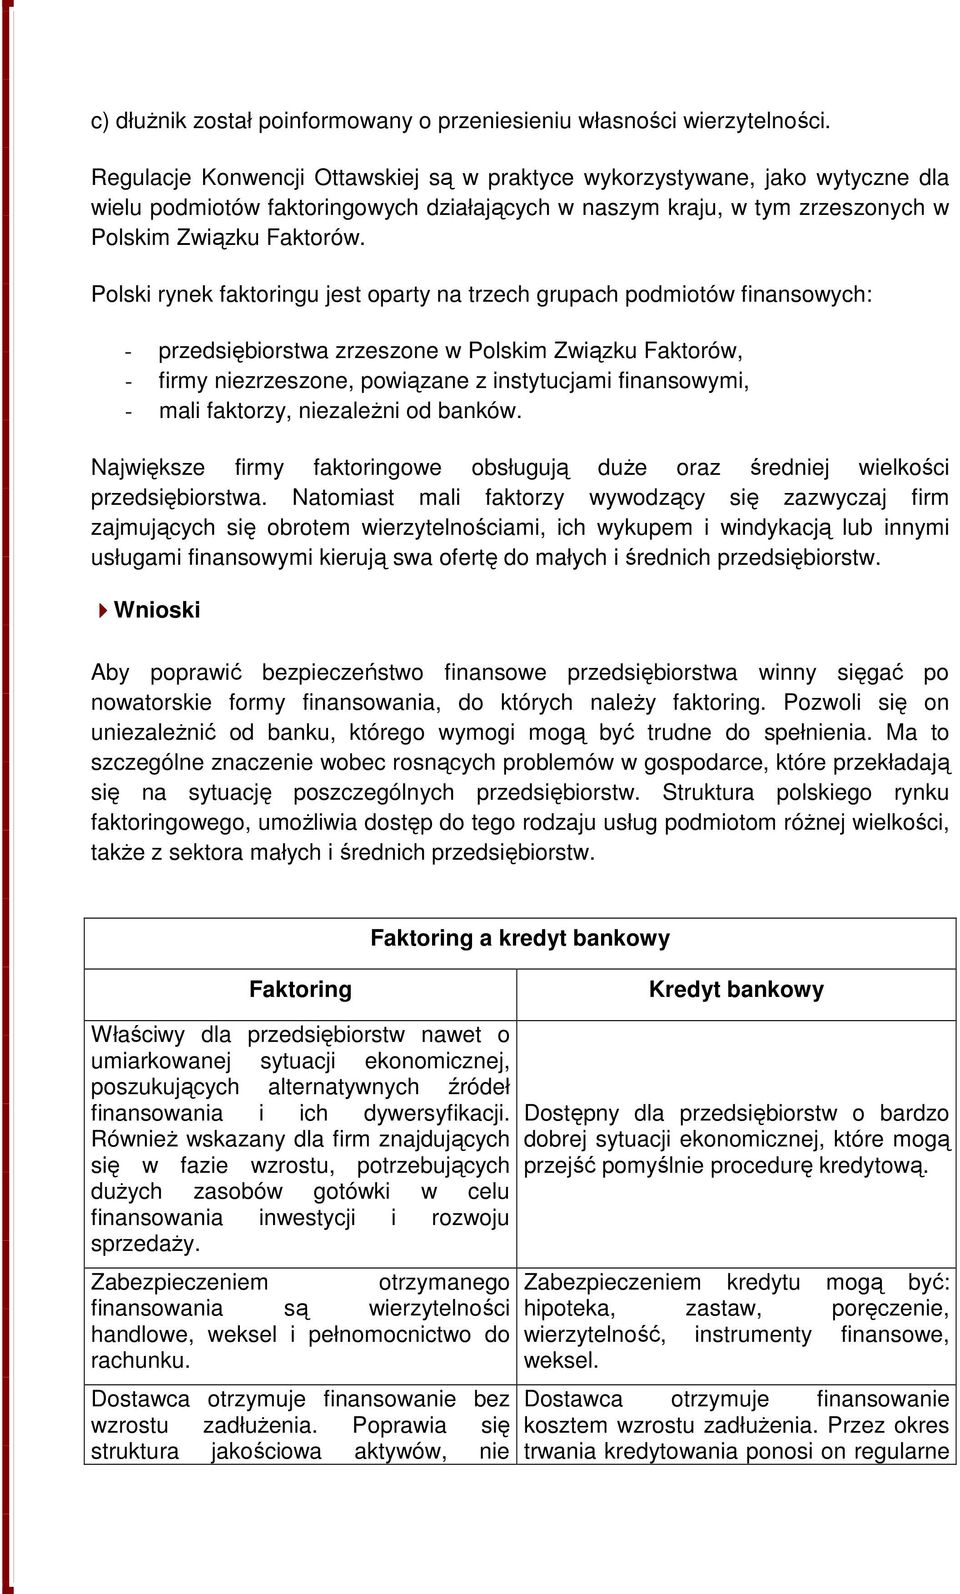 Polski rynek faktoringu jest oparty na trzech grupach podmiotów finansowych: - przedsiębiorstwa zrzeszone w Polskim Związku Faktorów, - firmy niezrzeszone, powiązane z instytucjami finansowymi, -